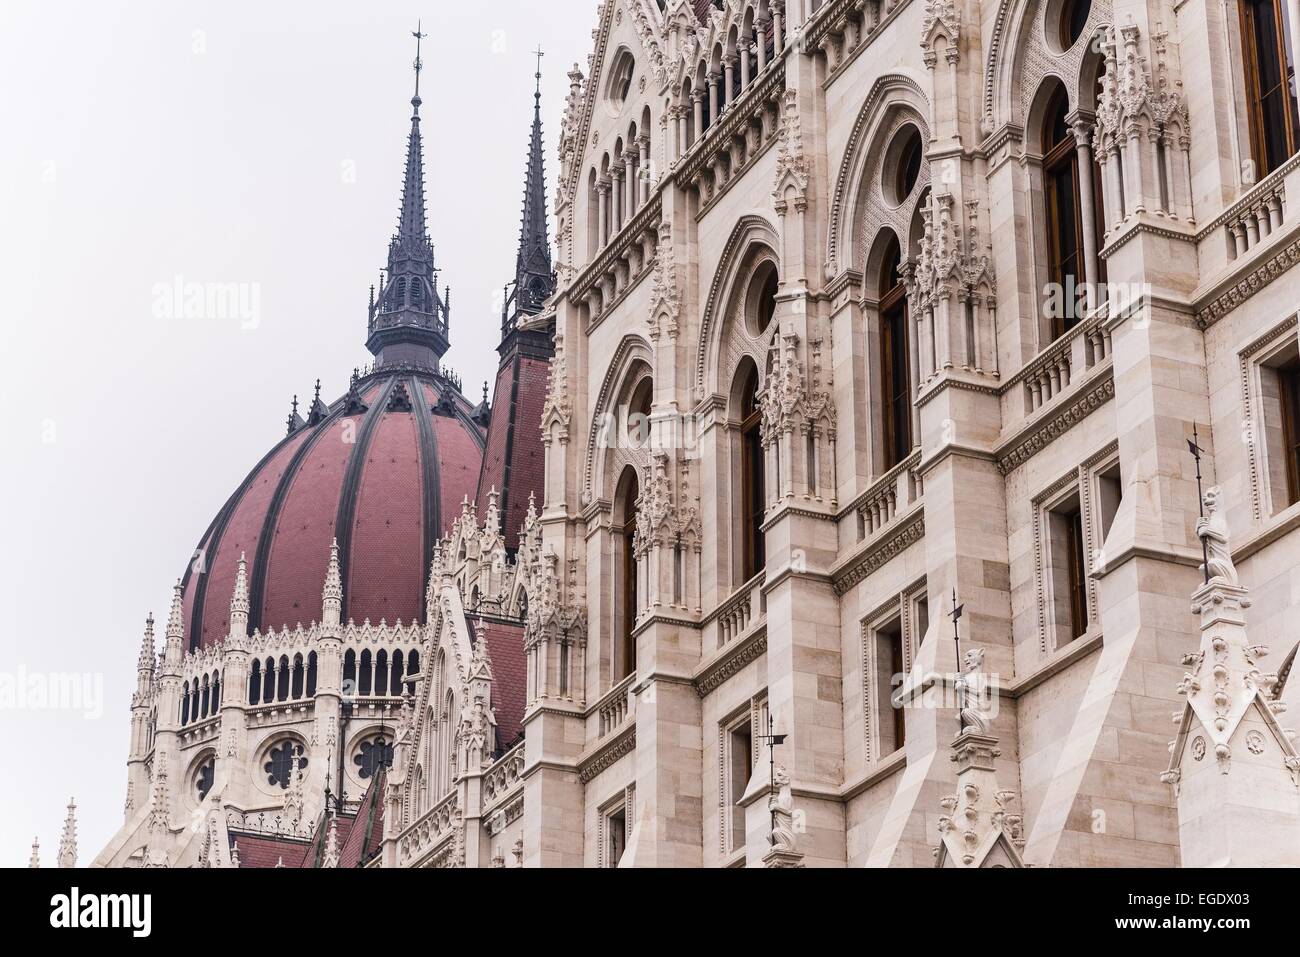 das Parlament von budapest Stockfoto